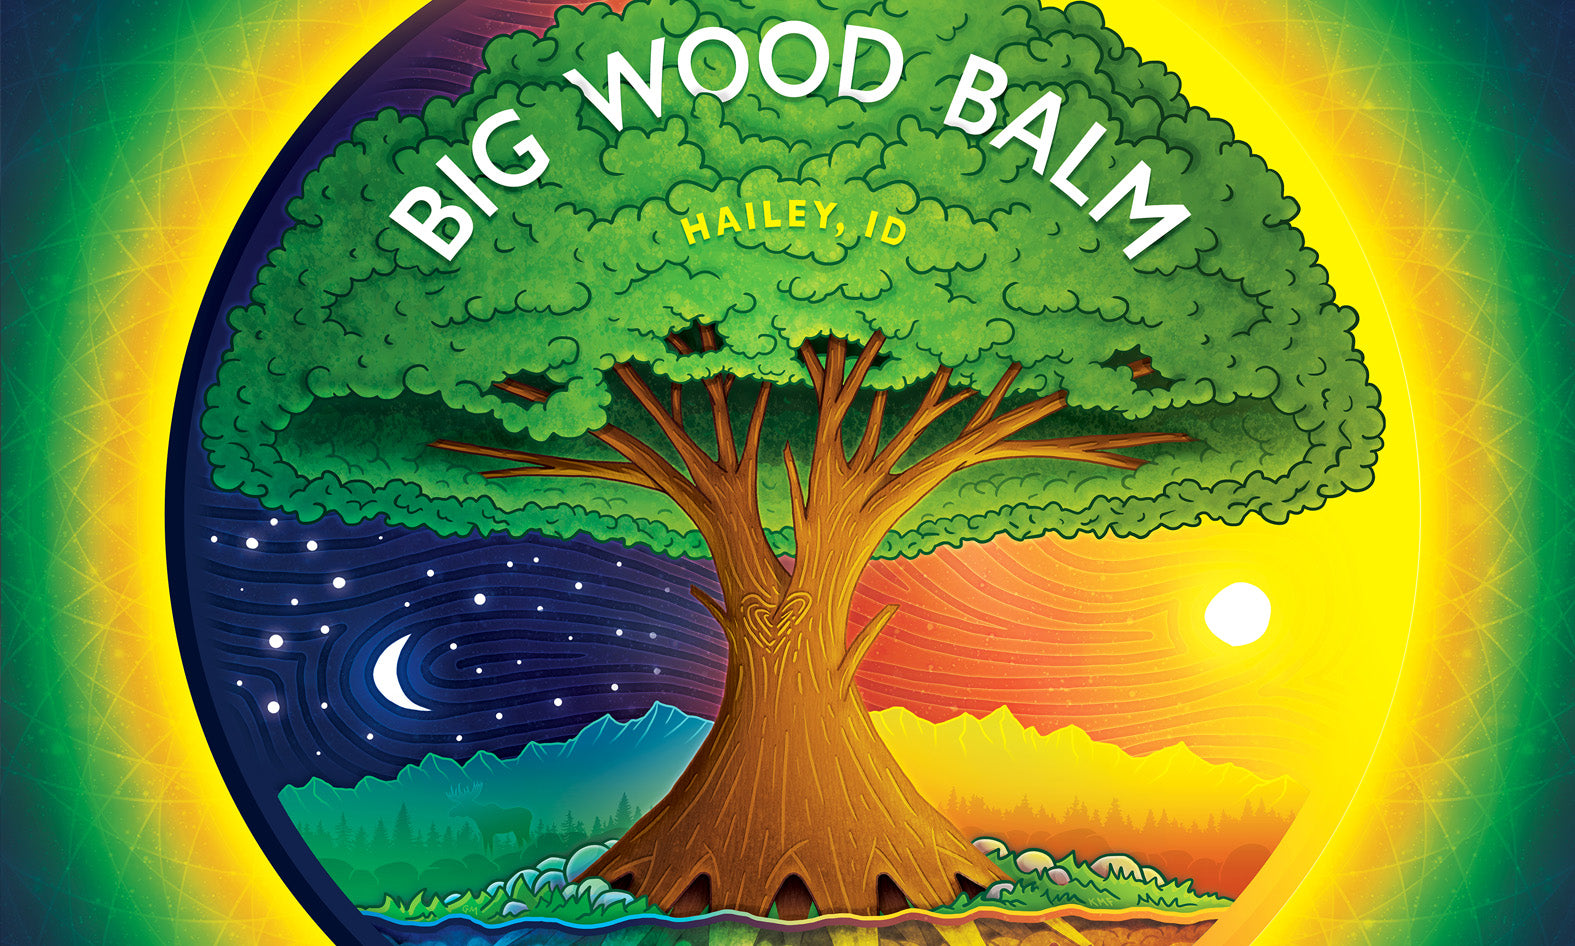 Big Wood Balm Product Labels